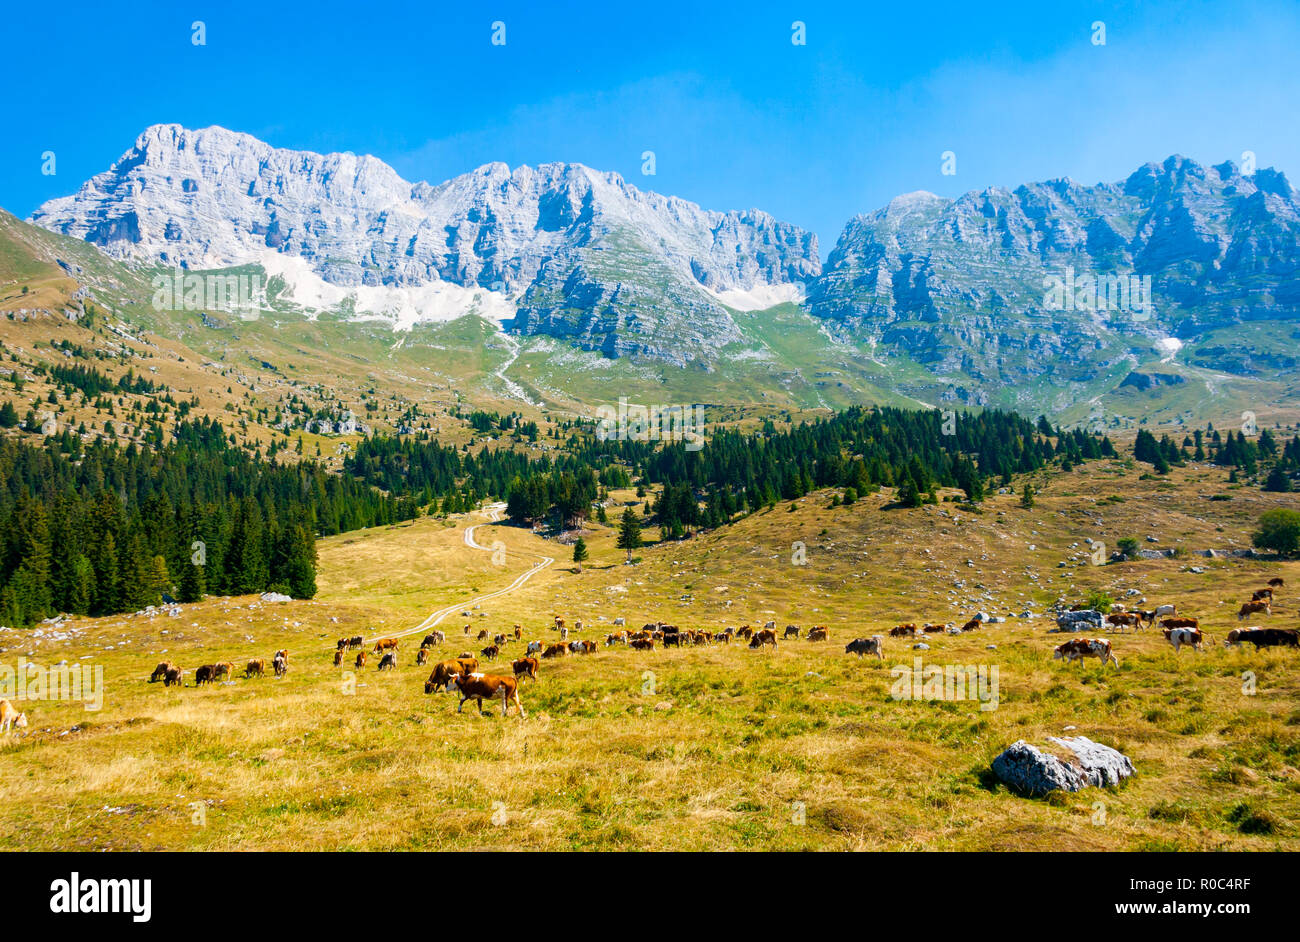 Les vaches qui paissent dans les pâturages de Montasio Plateau dans les Alpes Juliennes au cours de l'été, Sella Nevea, Friuli, Italie Banque D'Images